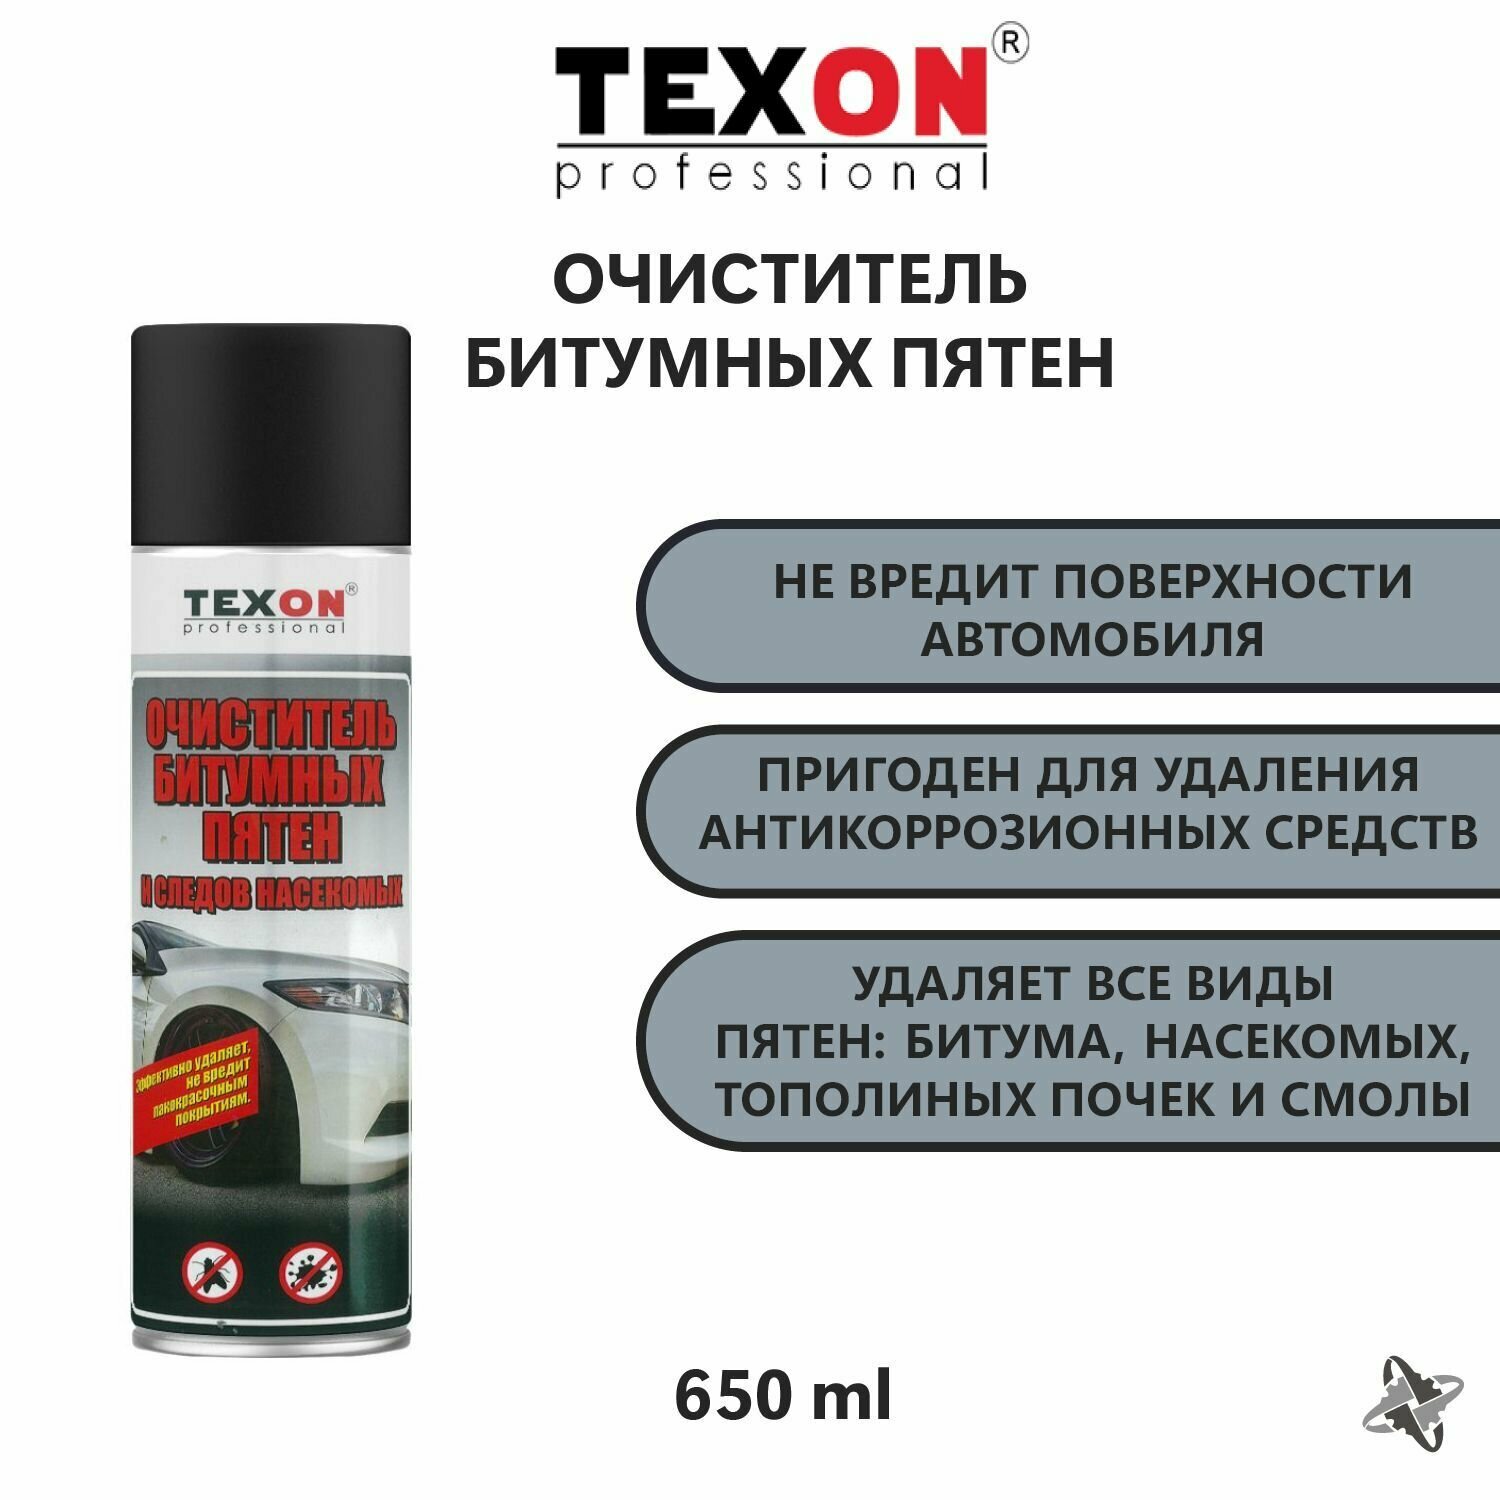 Очиститель битумных пятен и насекомых TEXON 650 мл